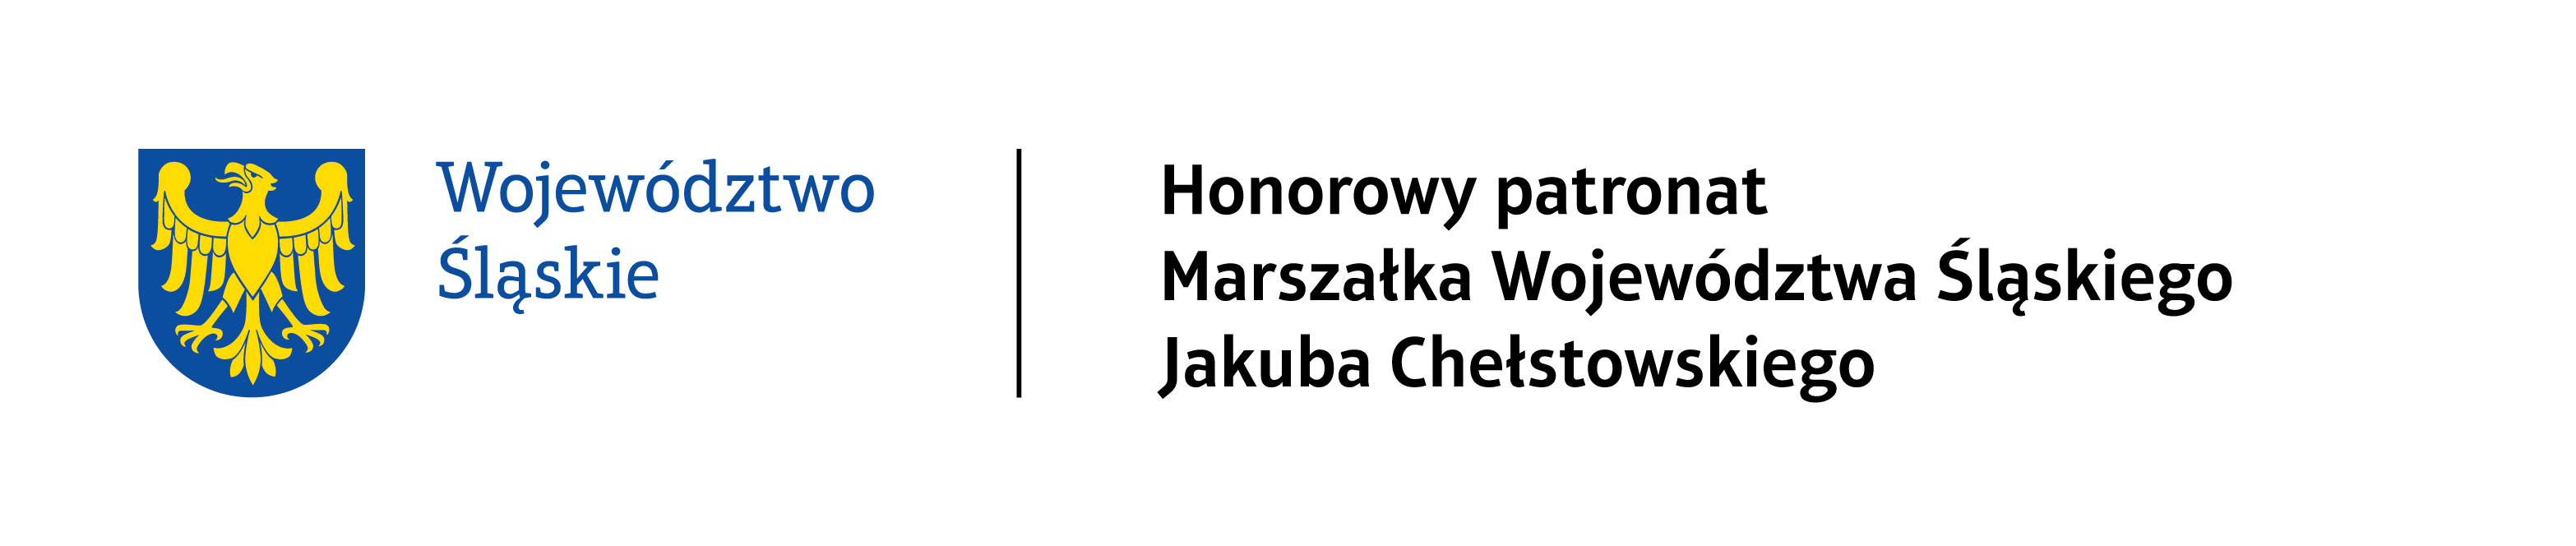 Patronat Marszałka województwa Slaskiego